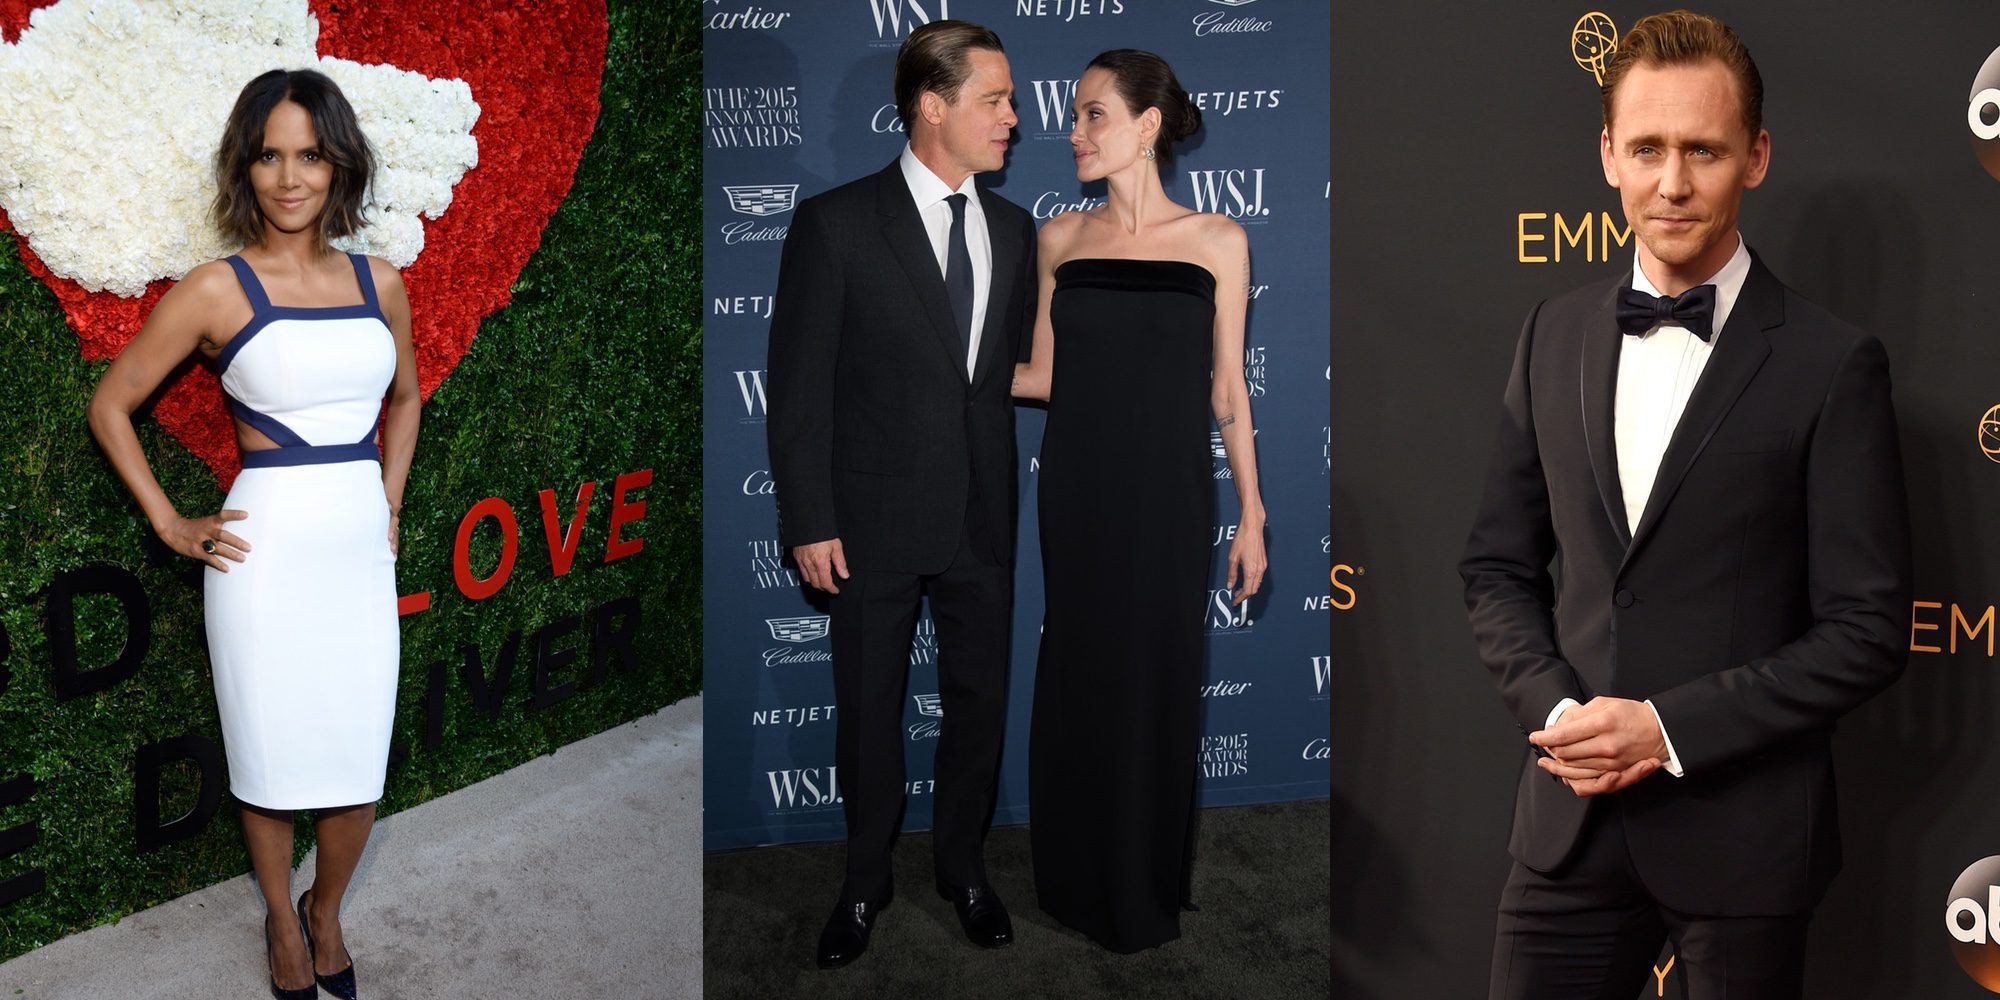 13 famosos y famosas con los que Angelina Jolie y Brad Pitt podrían superar su divorcio